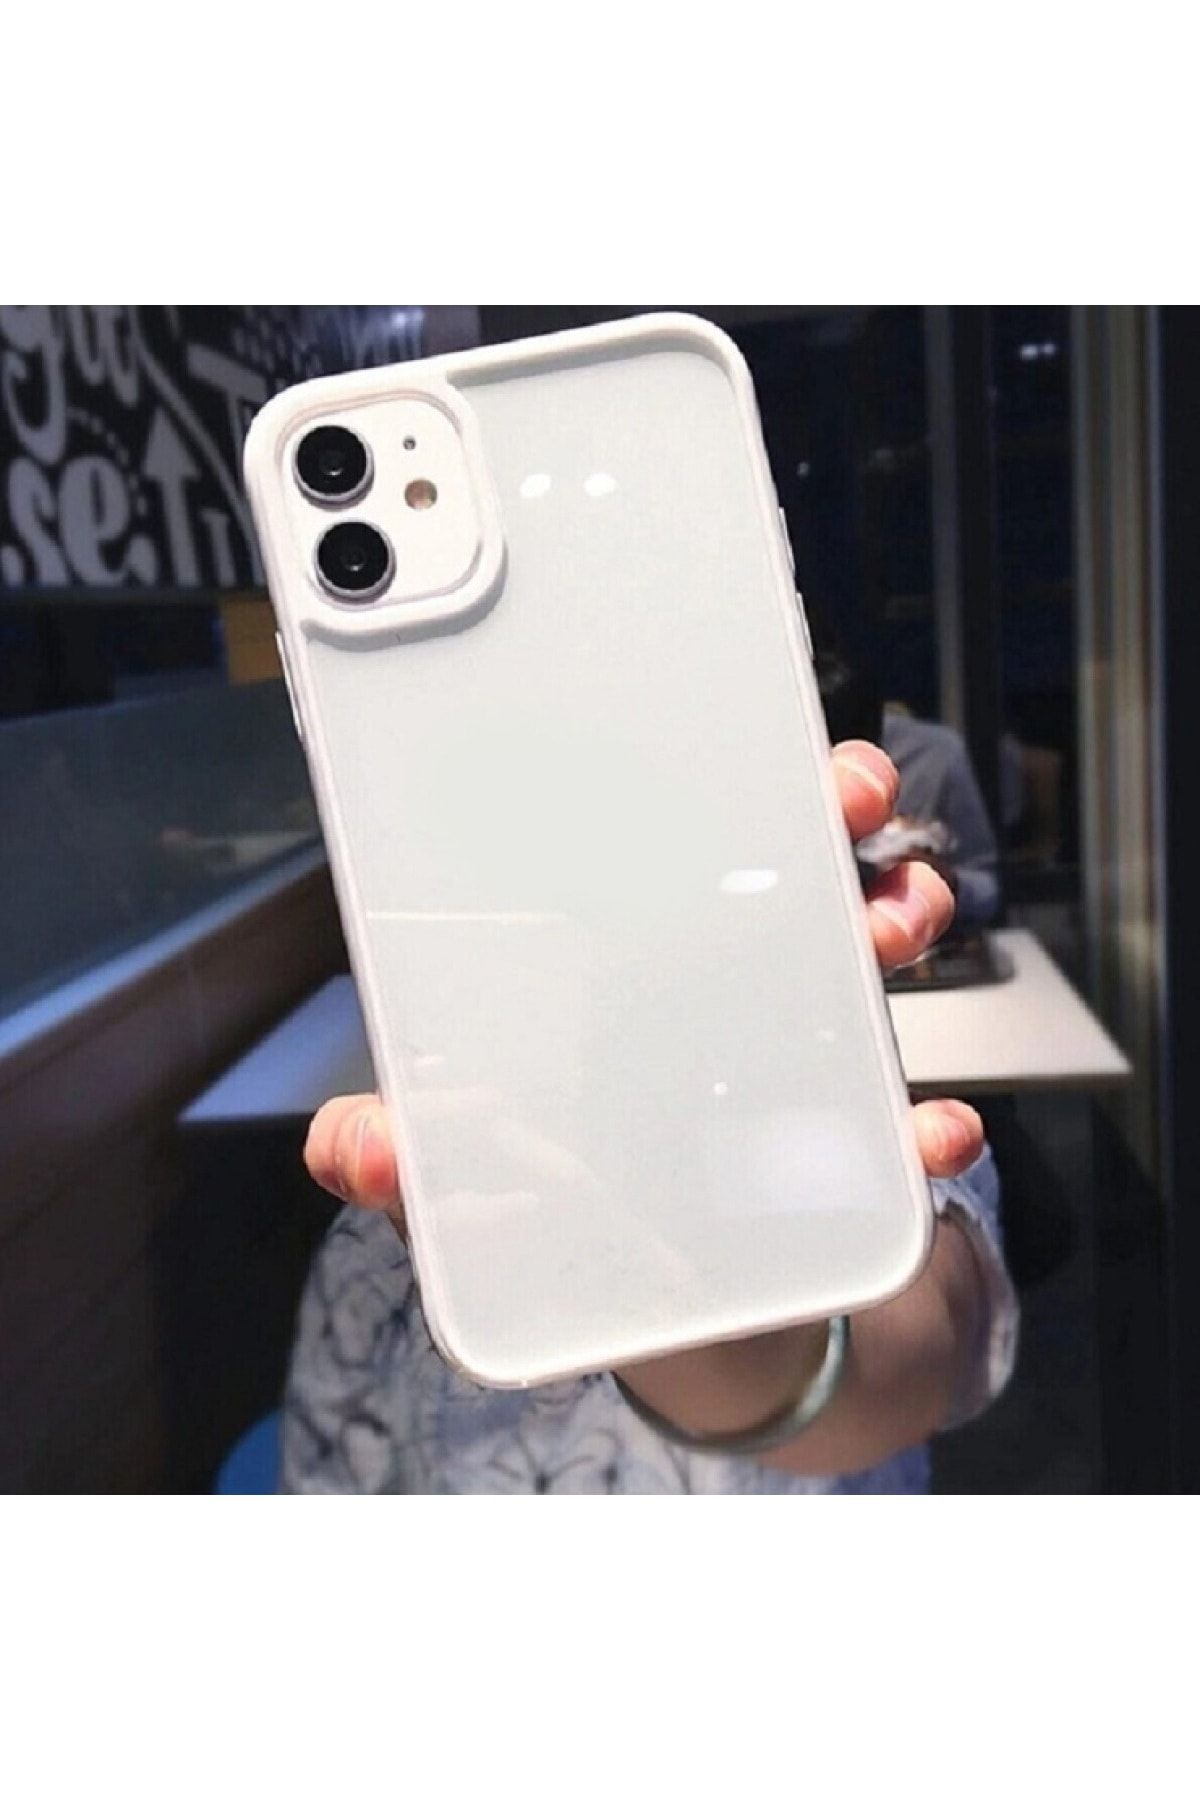 Go Aksesuar Apple Iphone 11 Uyumlu Kenarı Beyaz Renkli Darbe Önleyici Şeffaf Silikon Kılıf